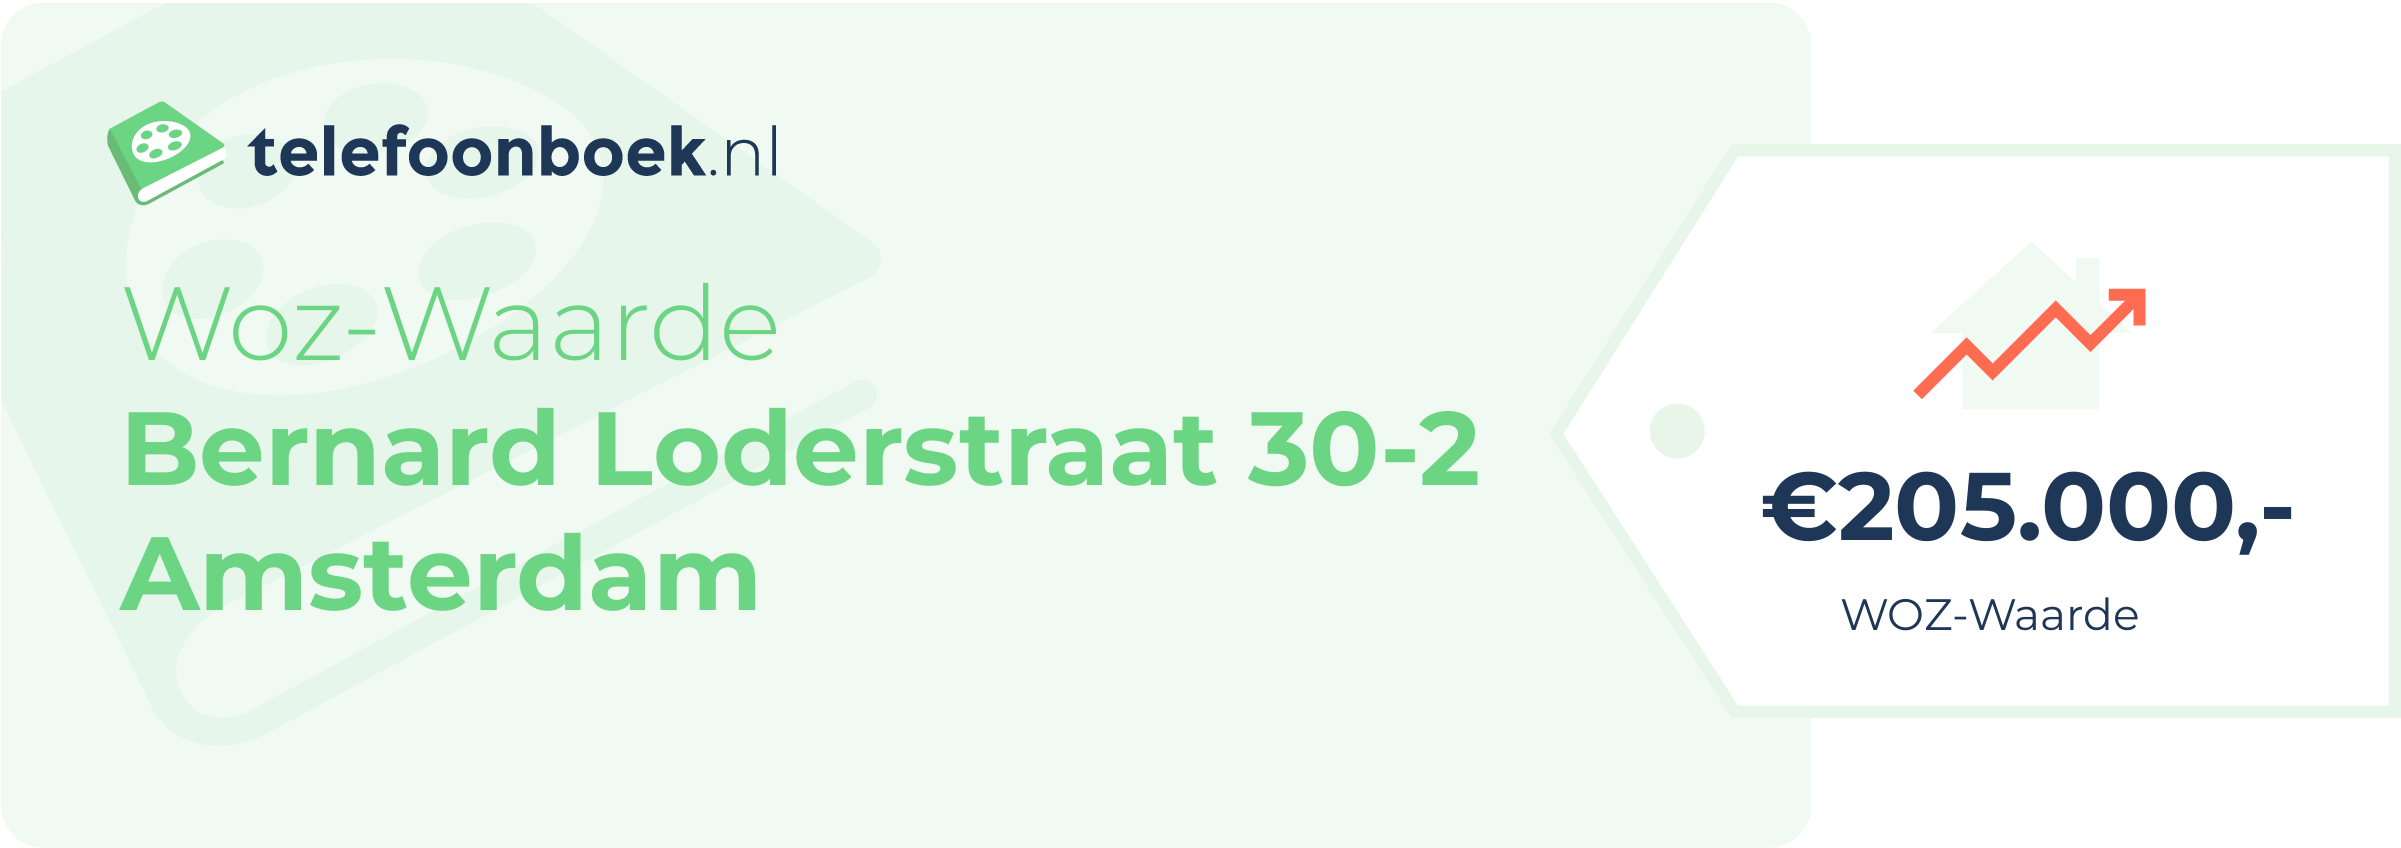 WOZ-waarde Bernard Loderstraat 30-2 Amsterdam